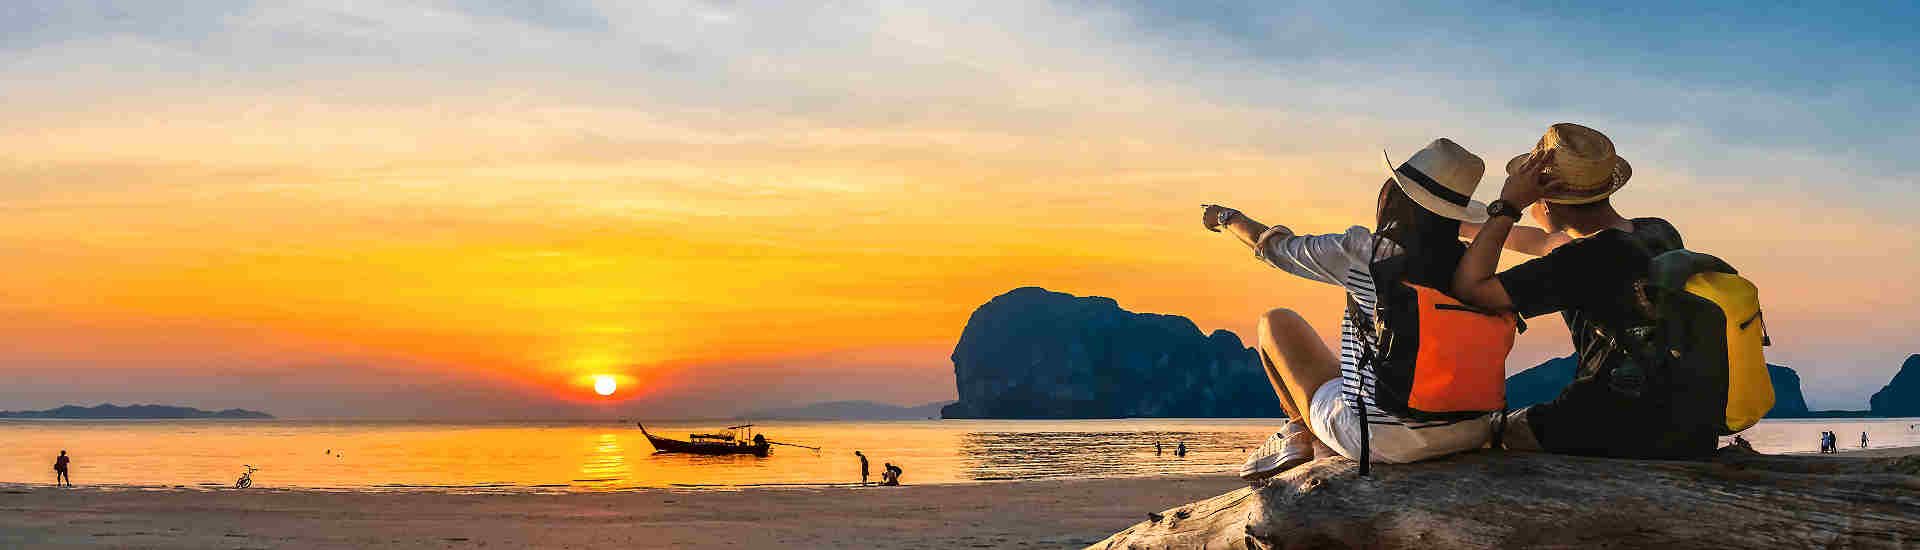 Kombireise Thailand: Entdecken Sie die Vielfalt von Kultur, Natur und Abenteuer in einem unvergesslichen Urlaub.